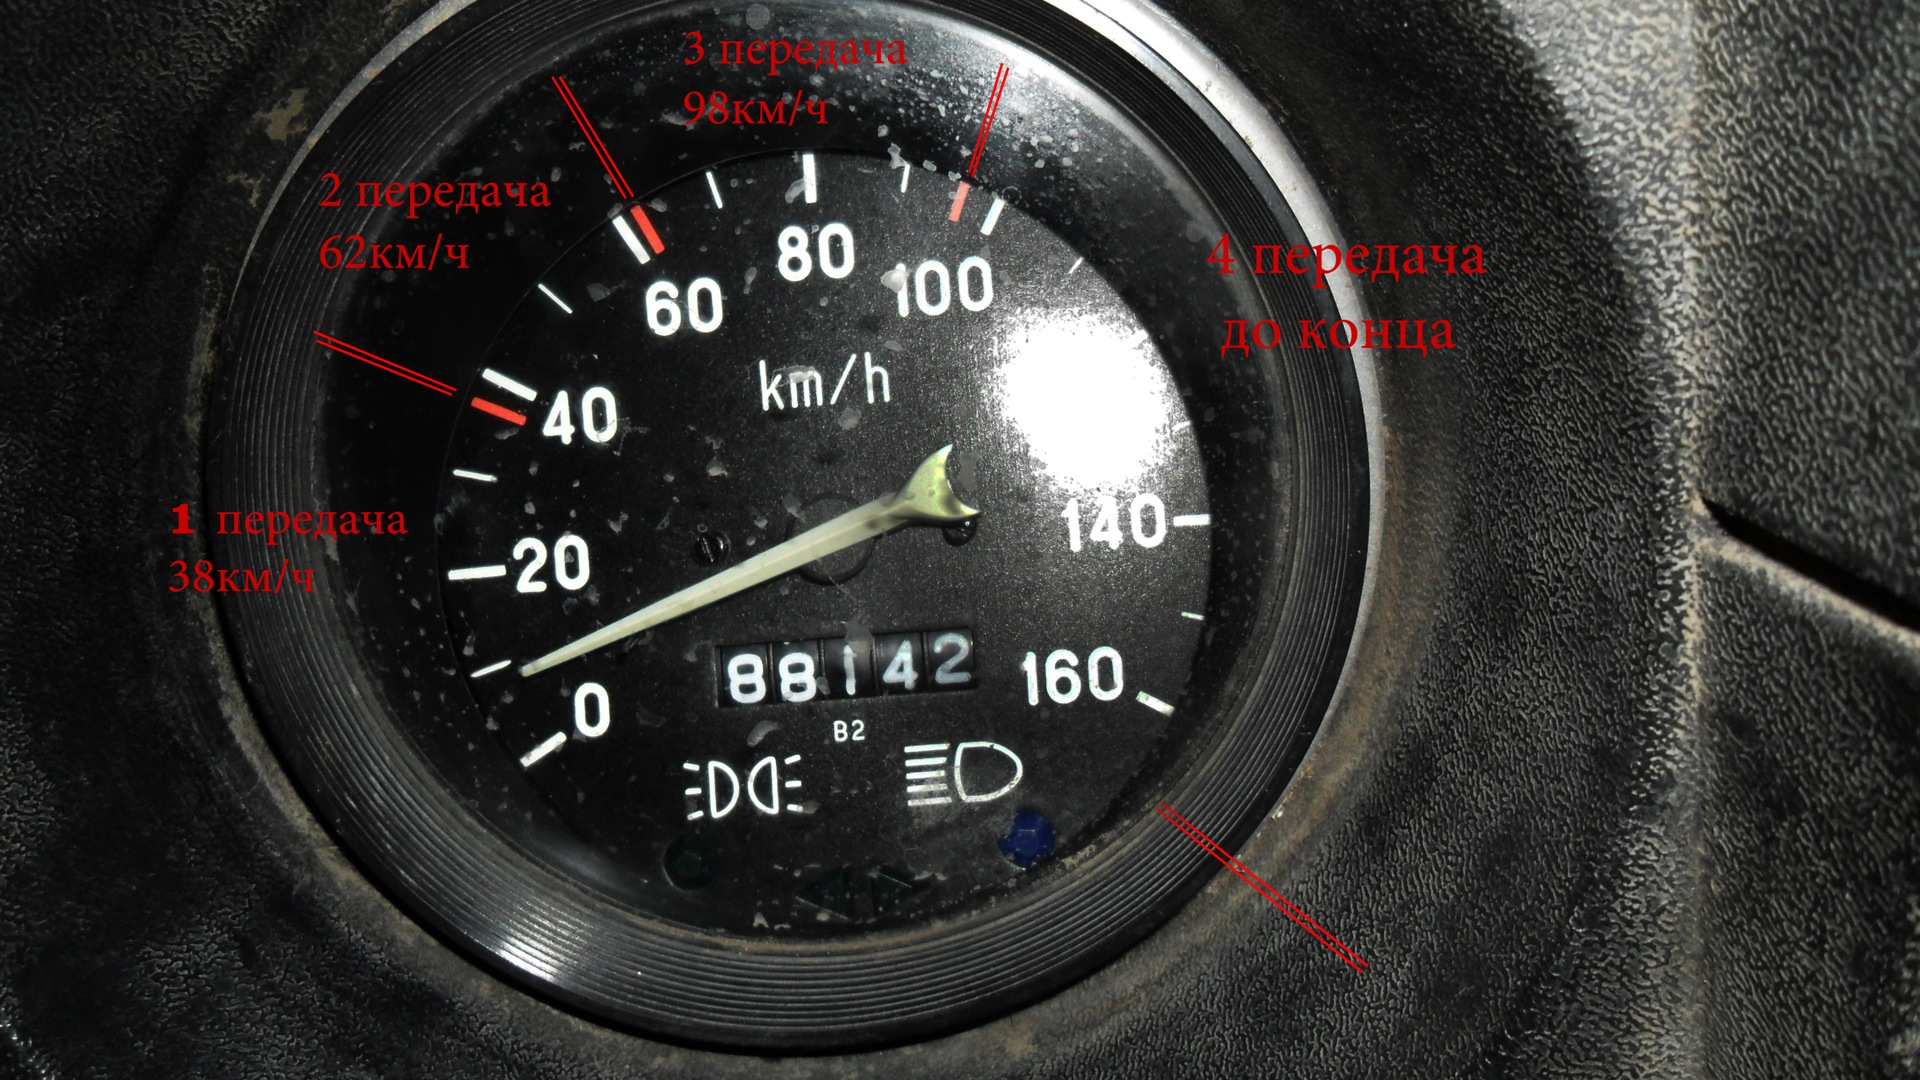 2107 масло литров сколько. Расход бензина ВАЗ 2107 карбюратор. ВАЗ 2107 карбюратор расход топлива на 100. ВАЗ 2106 расход топлива на 100 км карбюратор. Расход бензина ВАЗ 2106 1.5.